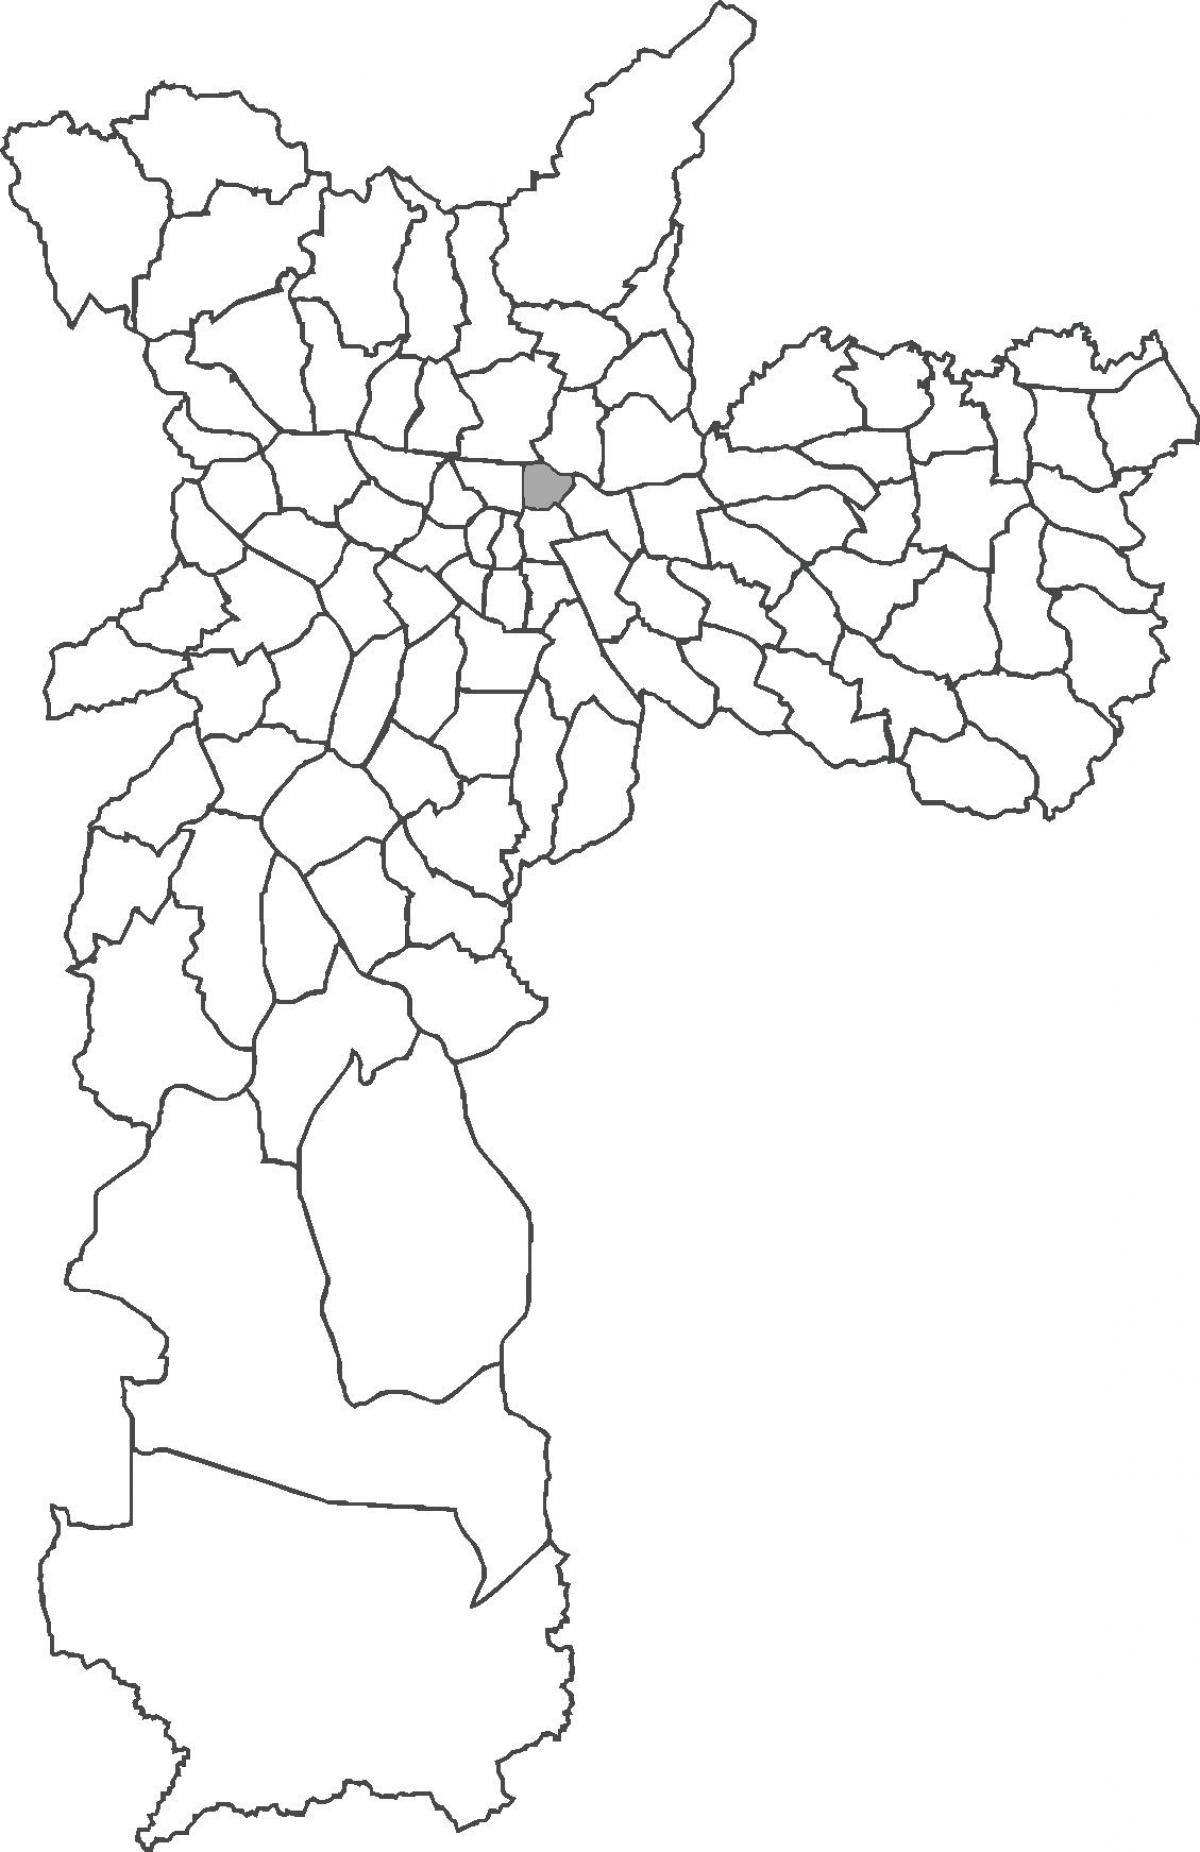 Քարտեզ Պարի շրջան